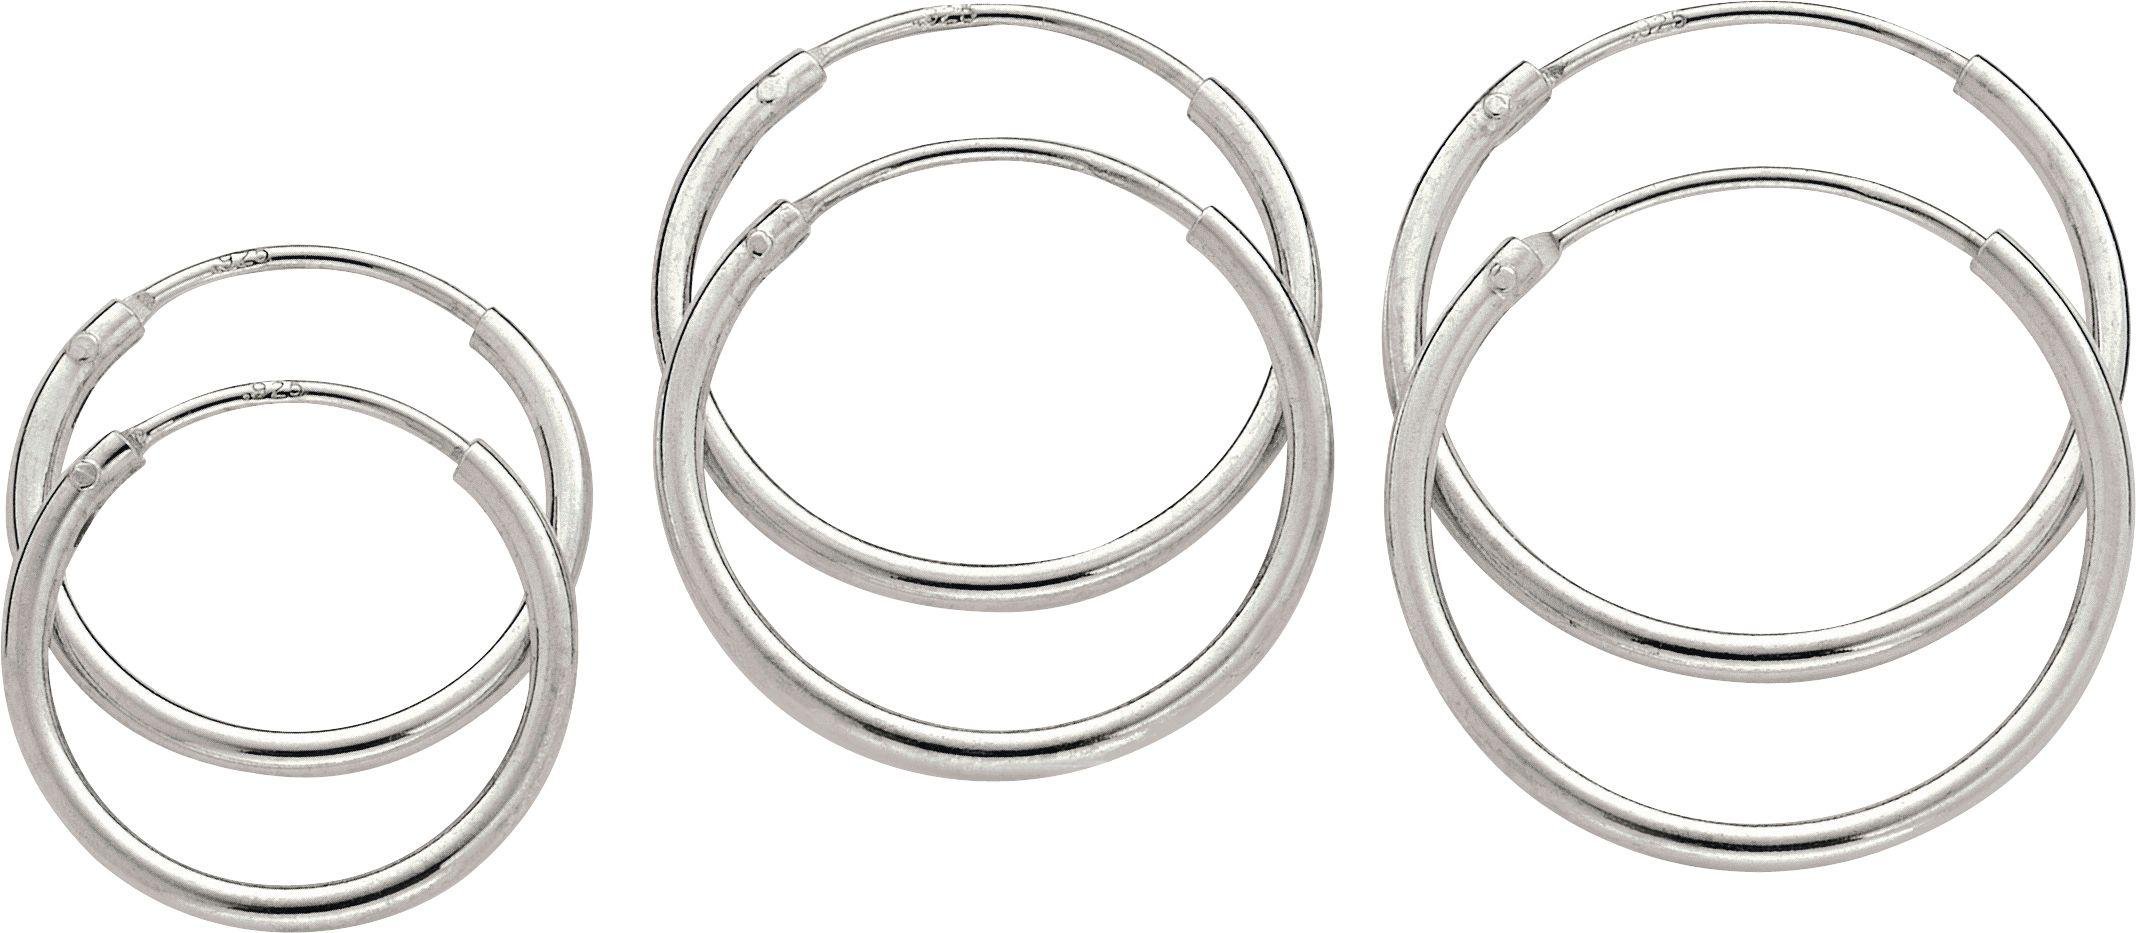 Revere Sterling Silver Set of 3 Hoop Earrings Review